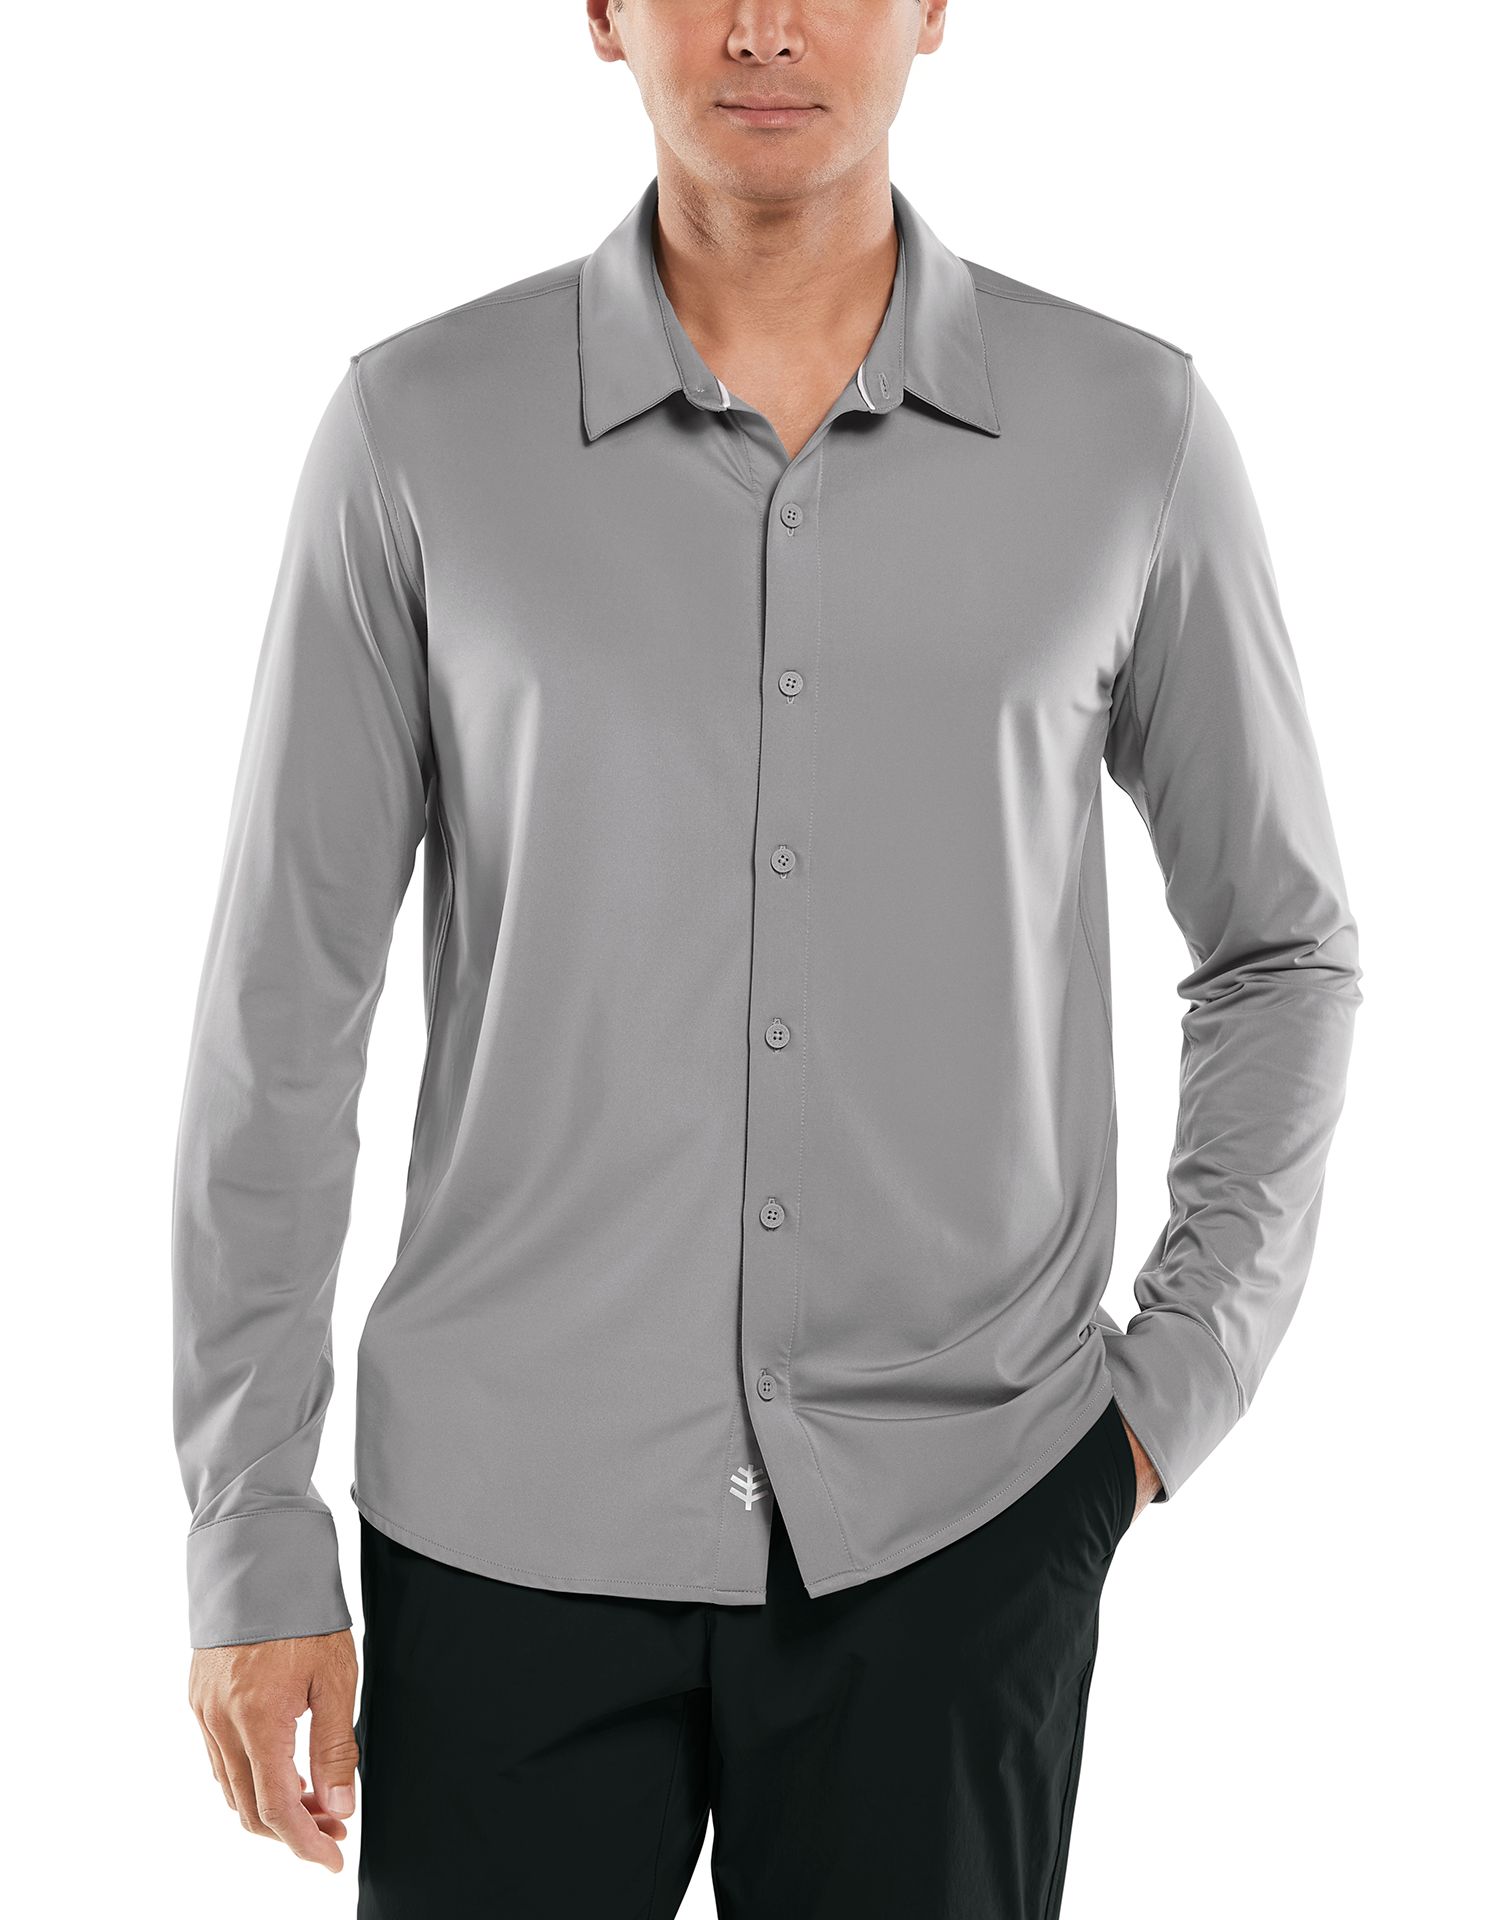 Coolibar - UV-Schutz Hemd für Männer - Vita Button Down - Grau